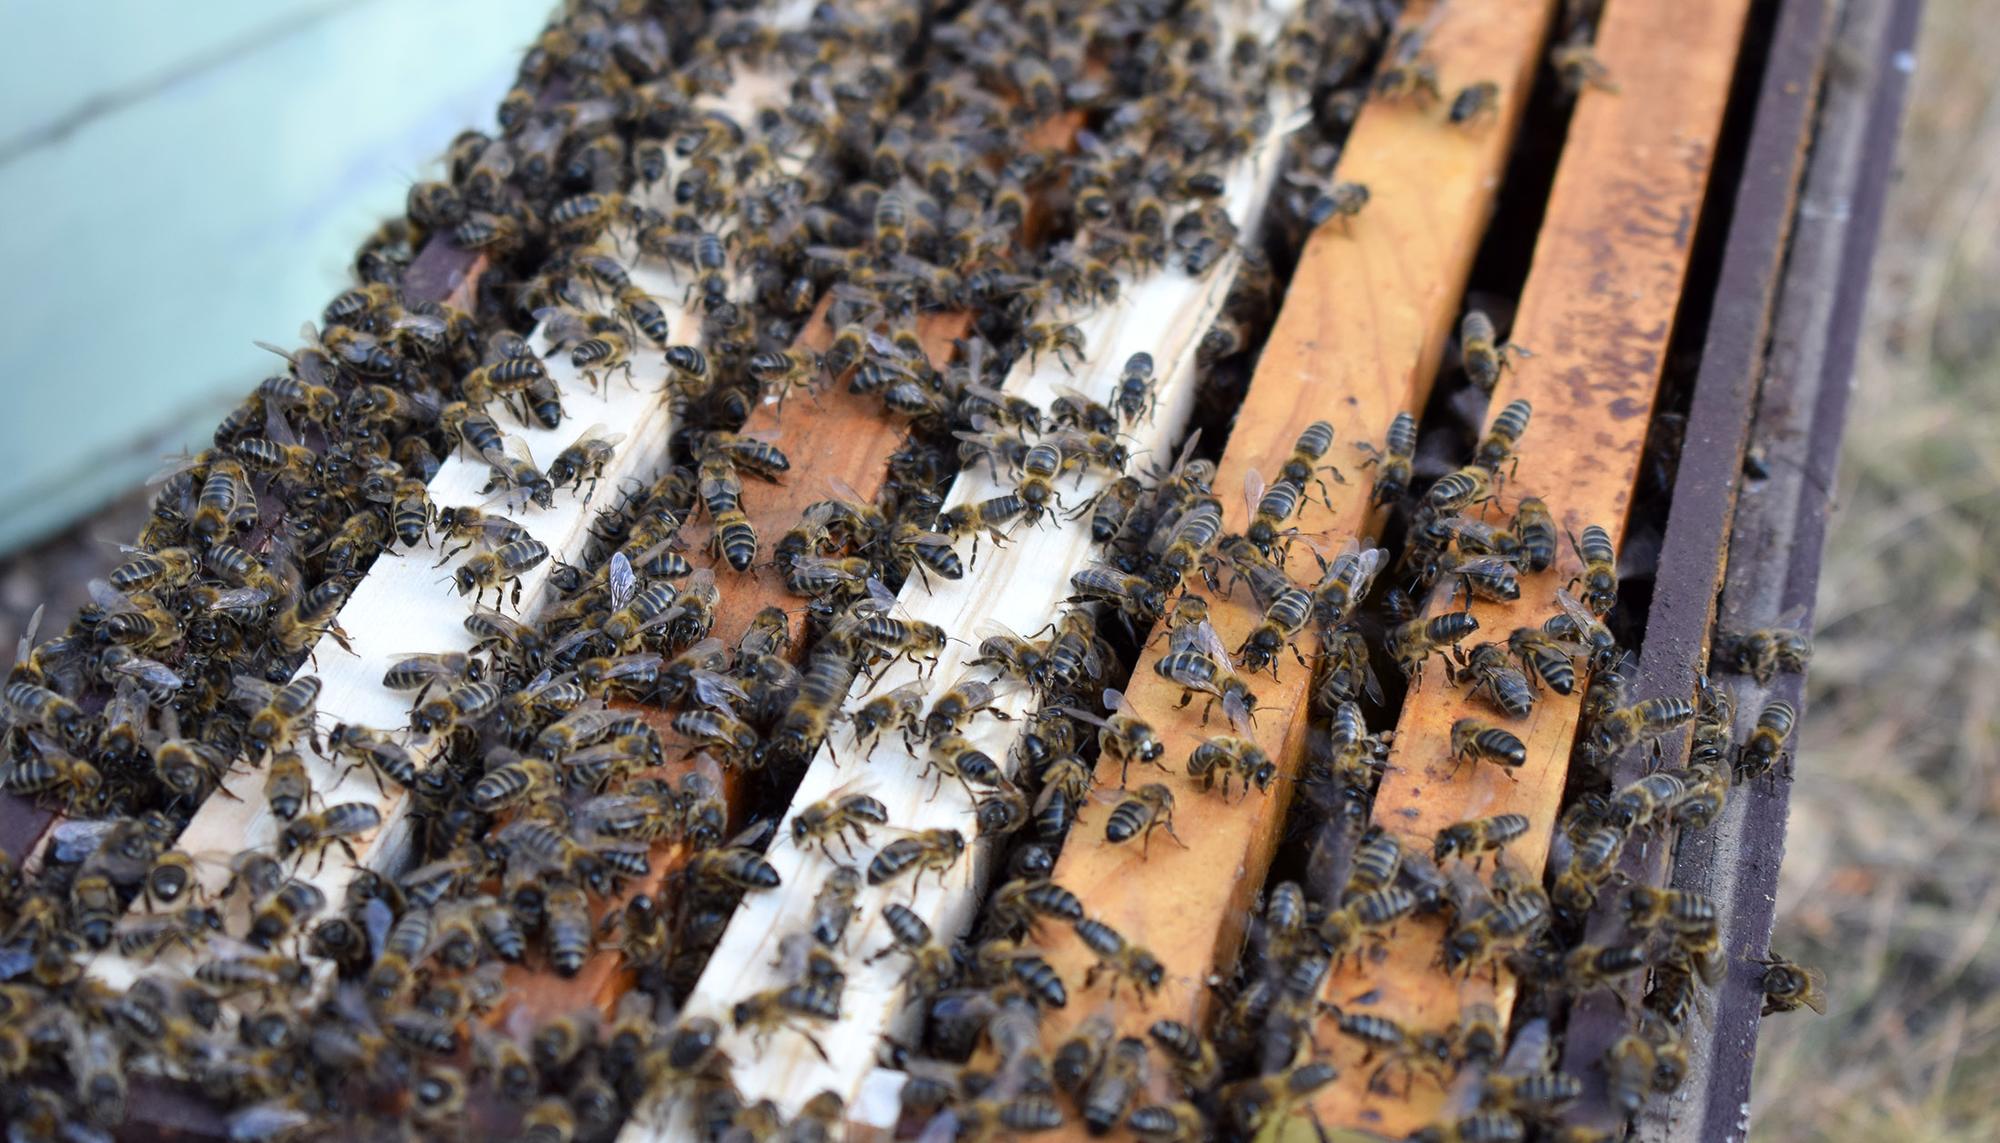 El excelente ejemplo de organización que nos dan las abejas - Productos del  Bosque Seco - tienda de la miel